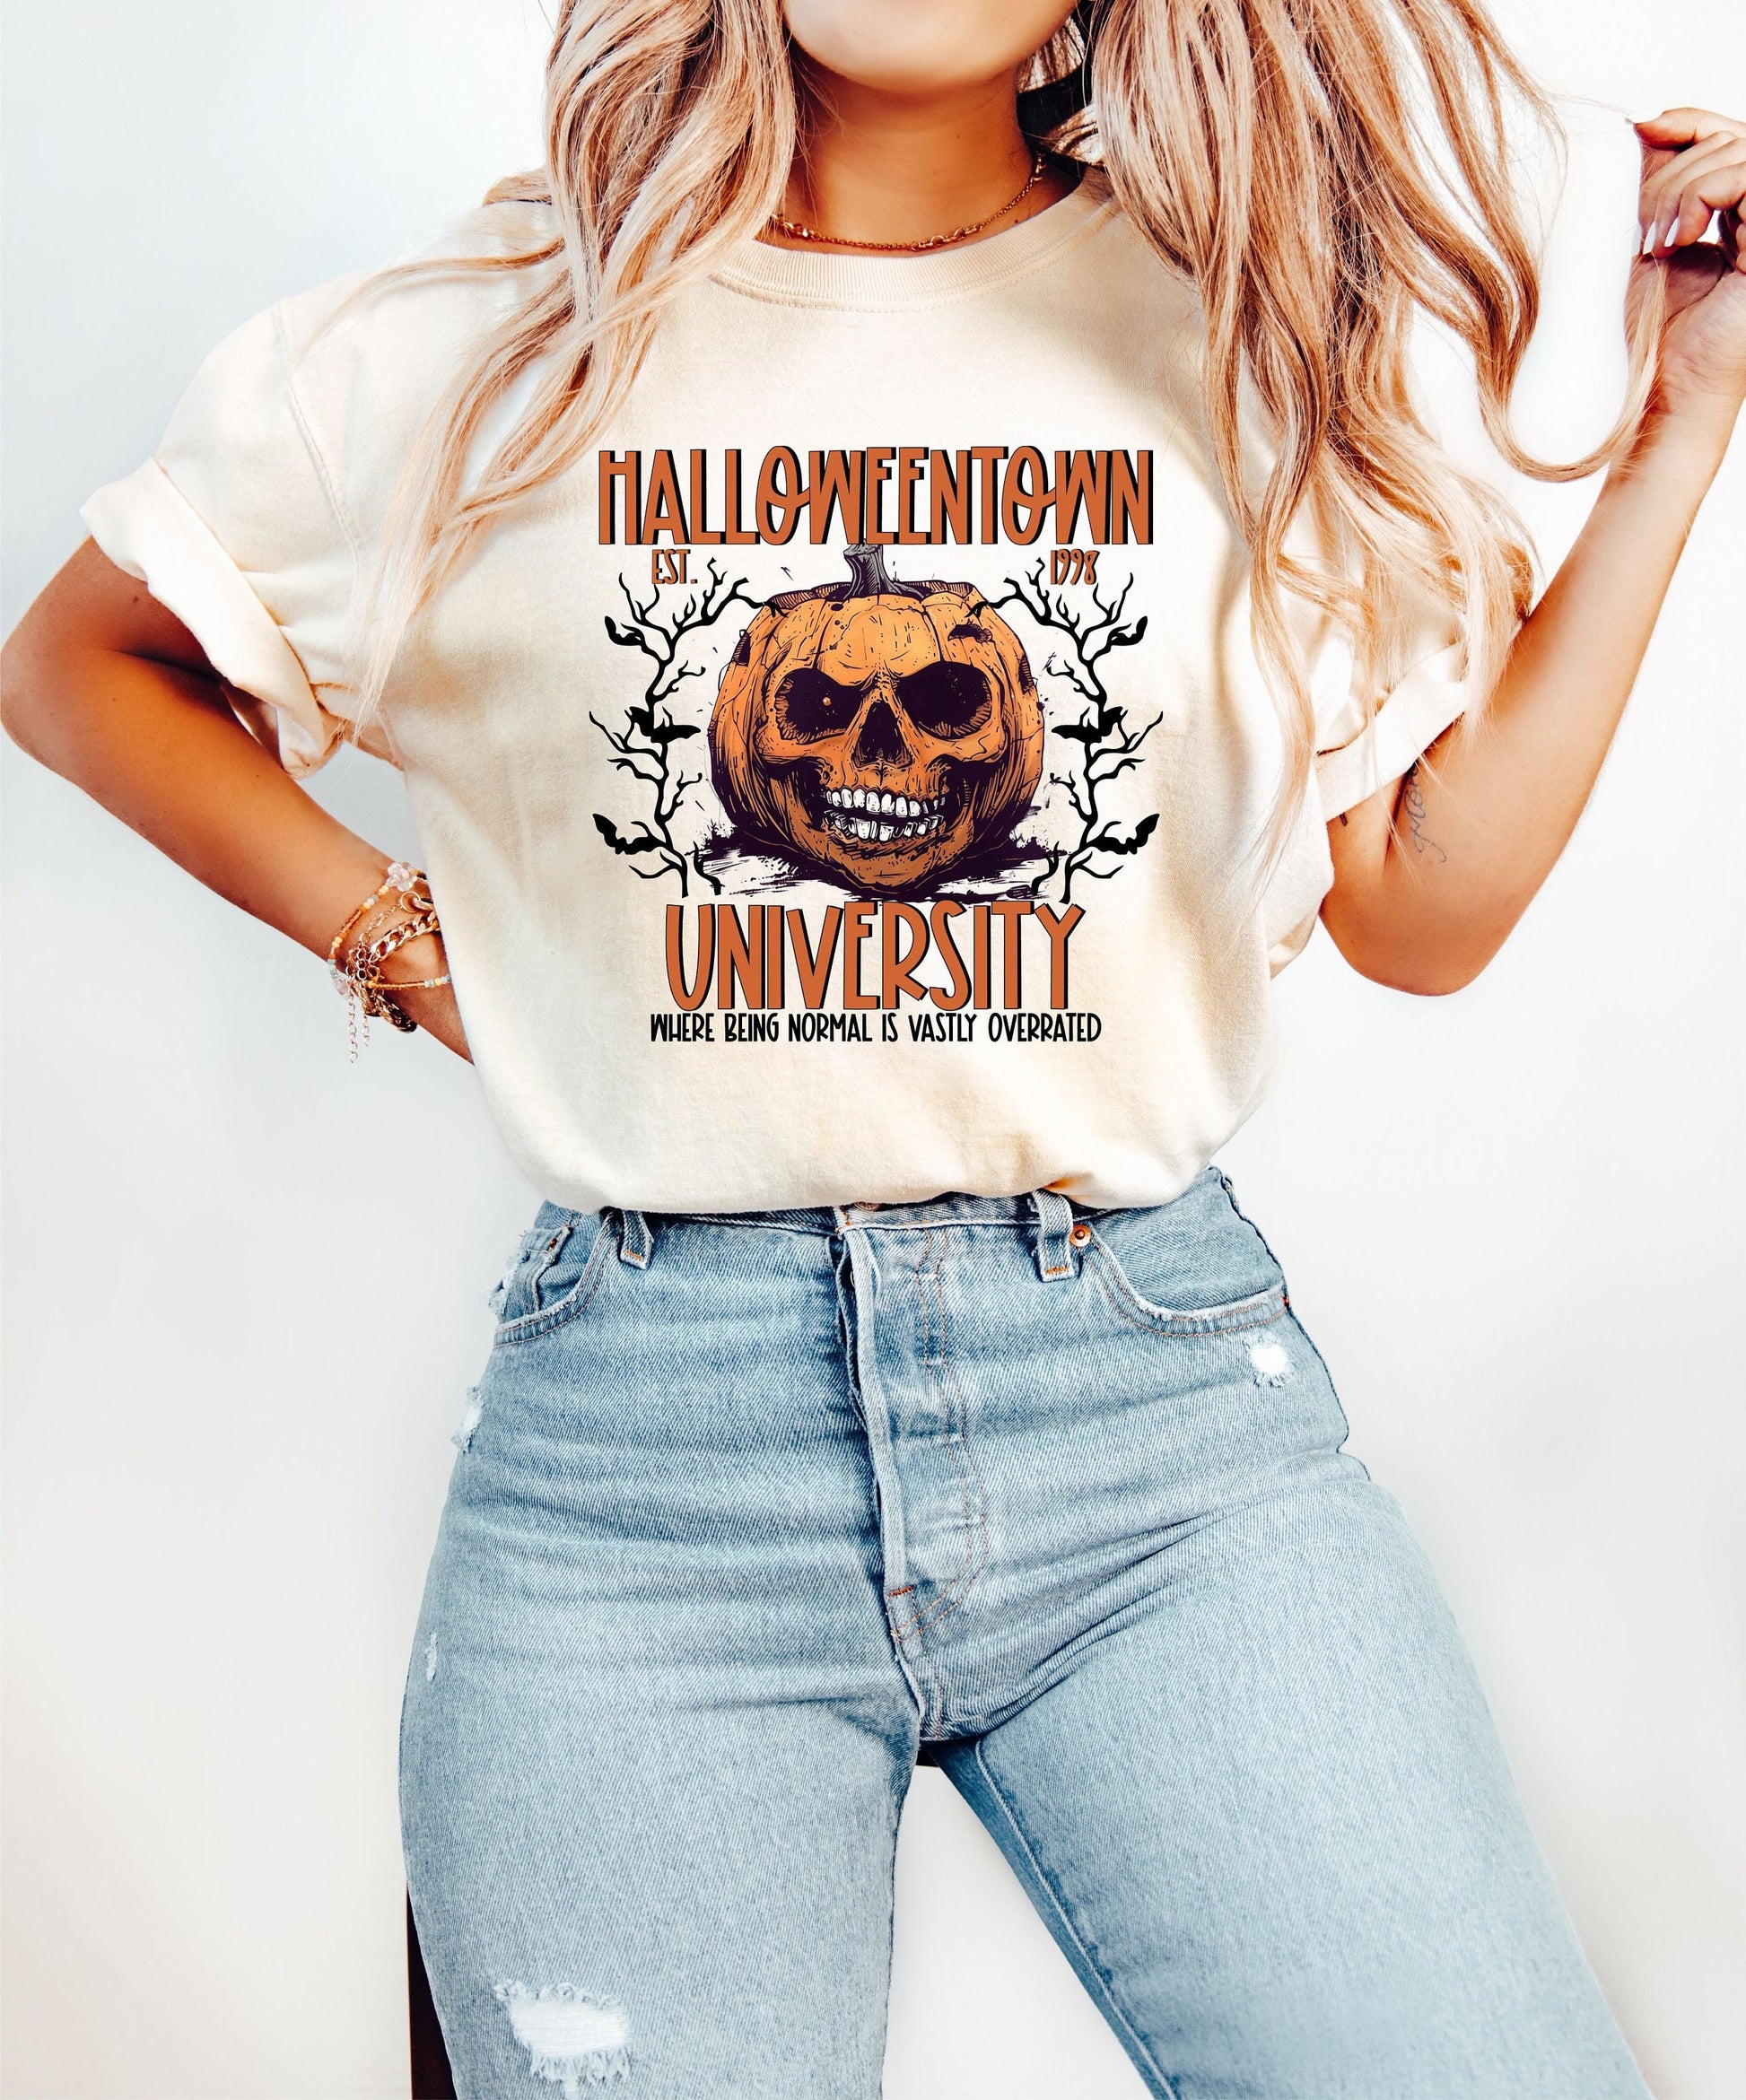 Halloween Pumpkin Shirt, Spooky Halloween T-Shirt, Halloween Shirts, Creepy Halloween Shirts, Spooky Season Shirt, Coquette Top